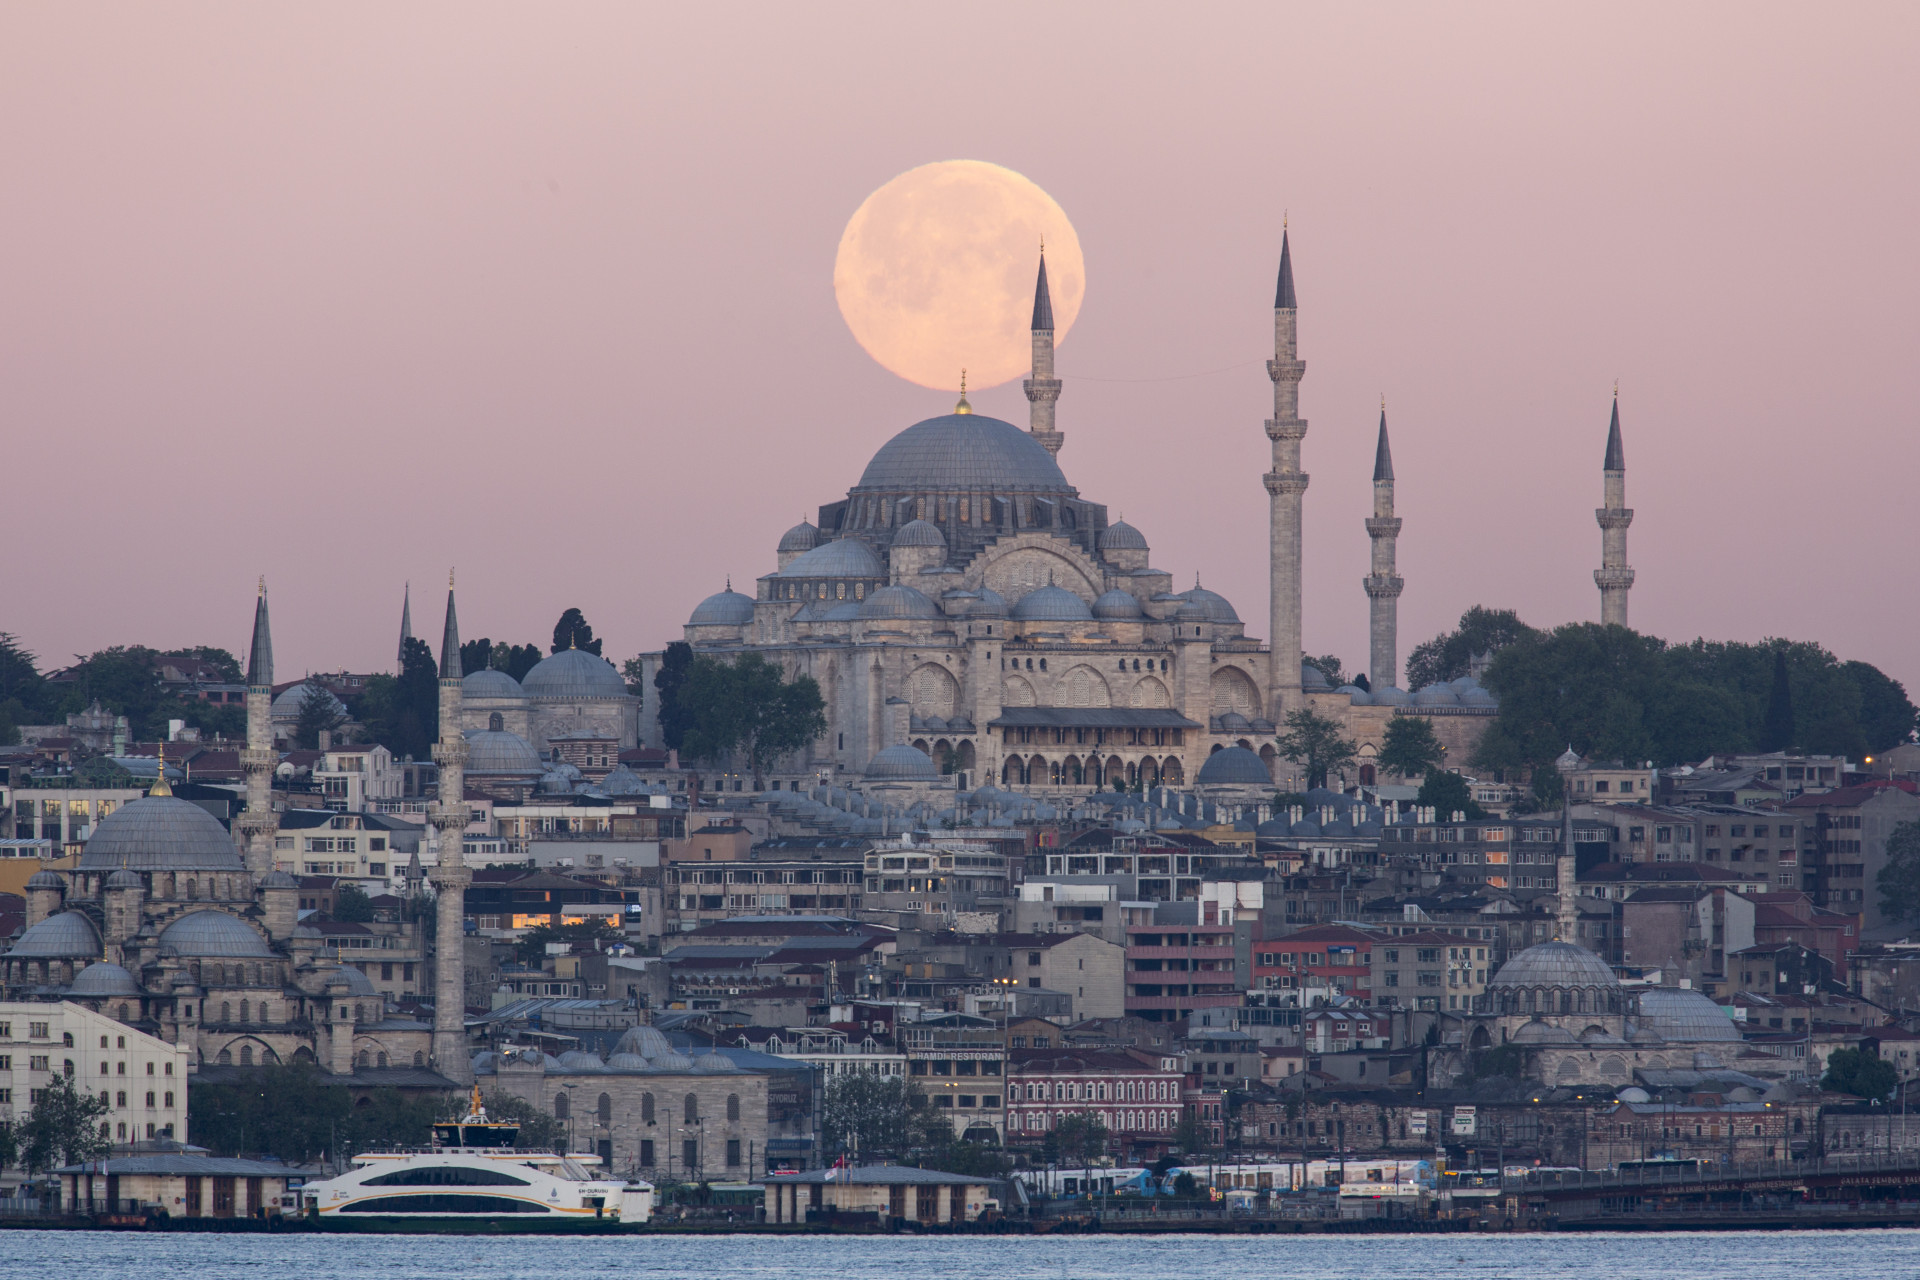 La plus grande ville de Turquie abrite le Istanbul Sapphire, le plus haut immeuble du pays, mais ce sont ses monuments anciens qui lui confèrent un paysage divin et inoubliable.<p>Tu pourrais aussi aimer:<a href="https://www.starsinsider.com/n/454531?utm_source=msn.com&utm_medium=display&utm_campaign=referral_description&utm_content=217079v3fr-ca"> Ces personnes célèbres ont vécu jusqu'à 100 ans ! (ou plus)</a></p>